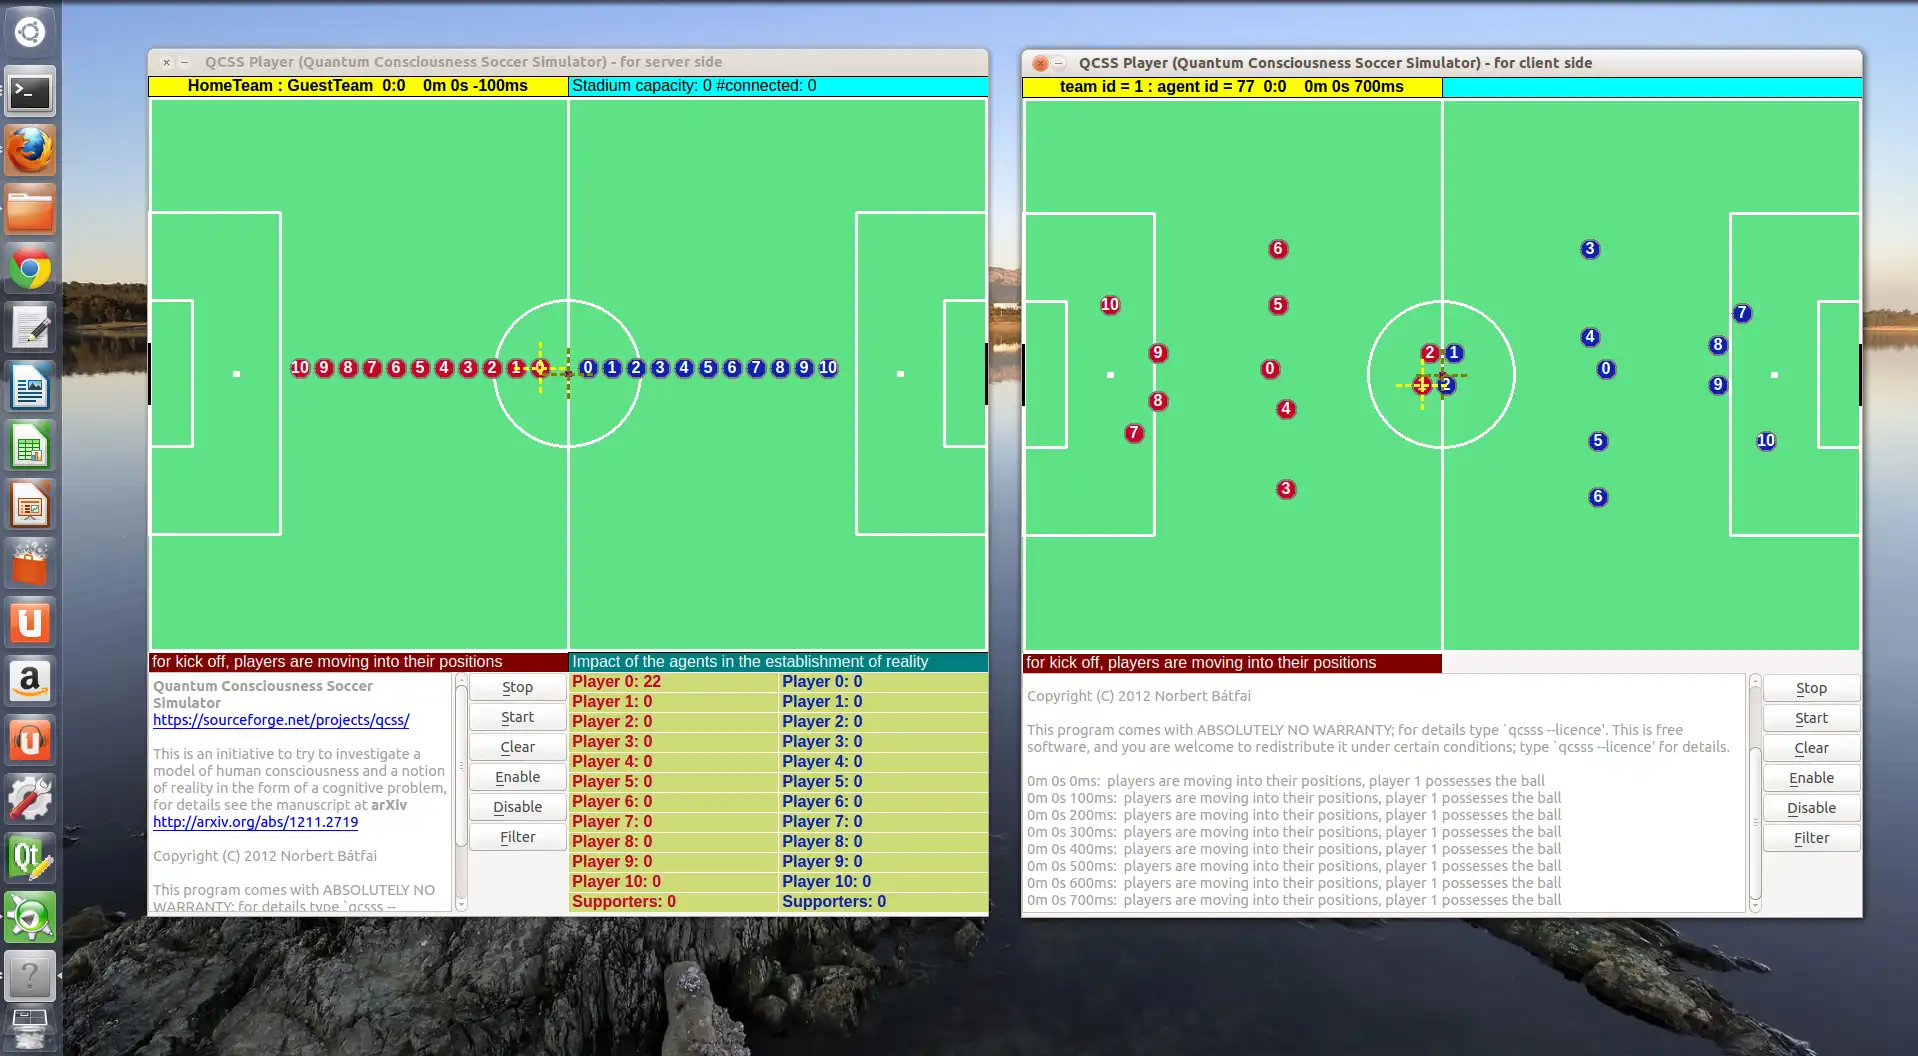 ດາວໂຫຼດເຄື່ອງມືເວັບ ຫຼືແອັບເວັບ Quantum Consciousness Soccer Simulator ເພື່ອແລ່ນໃນ Linux ອອນໄລນ໌